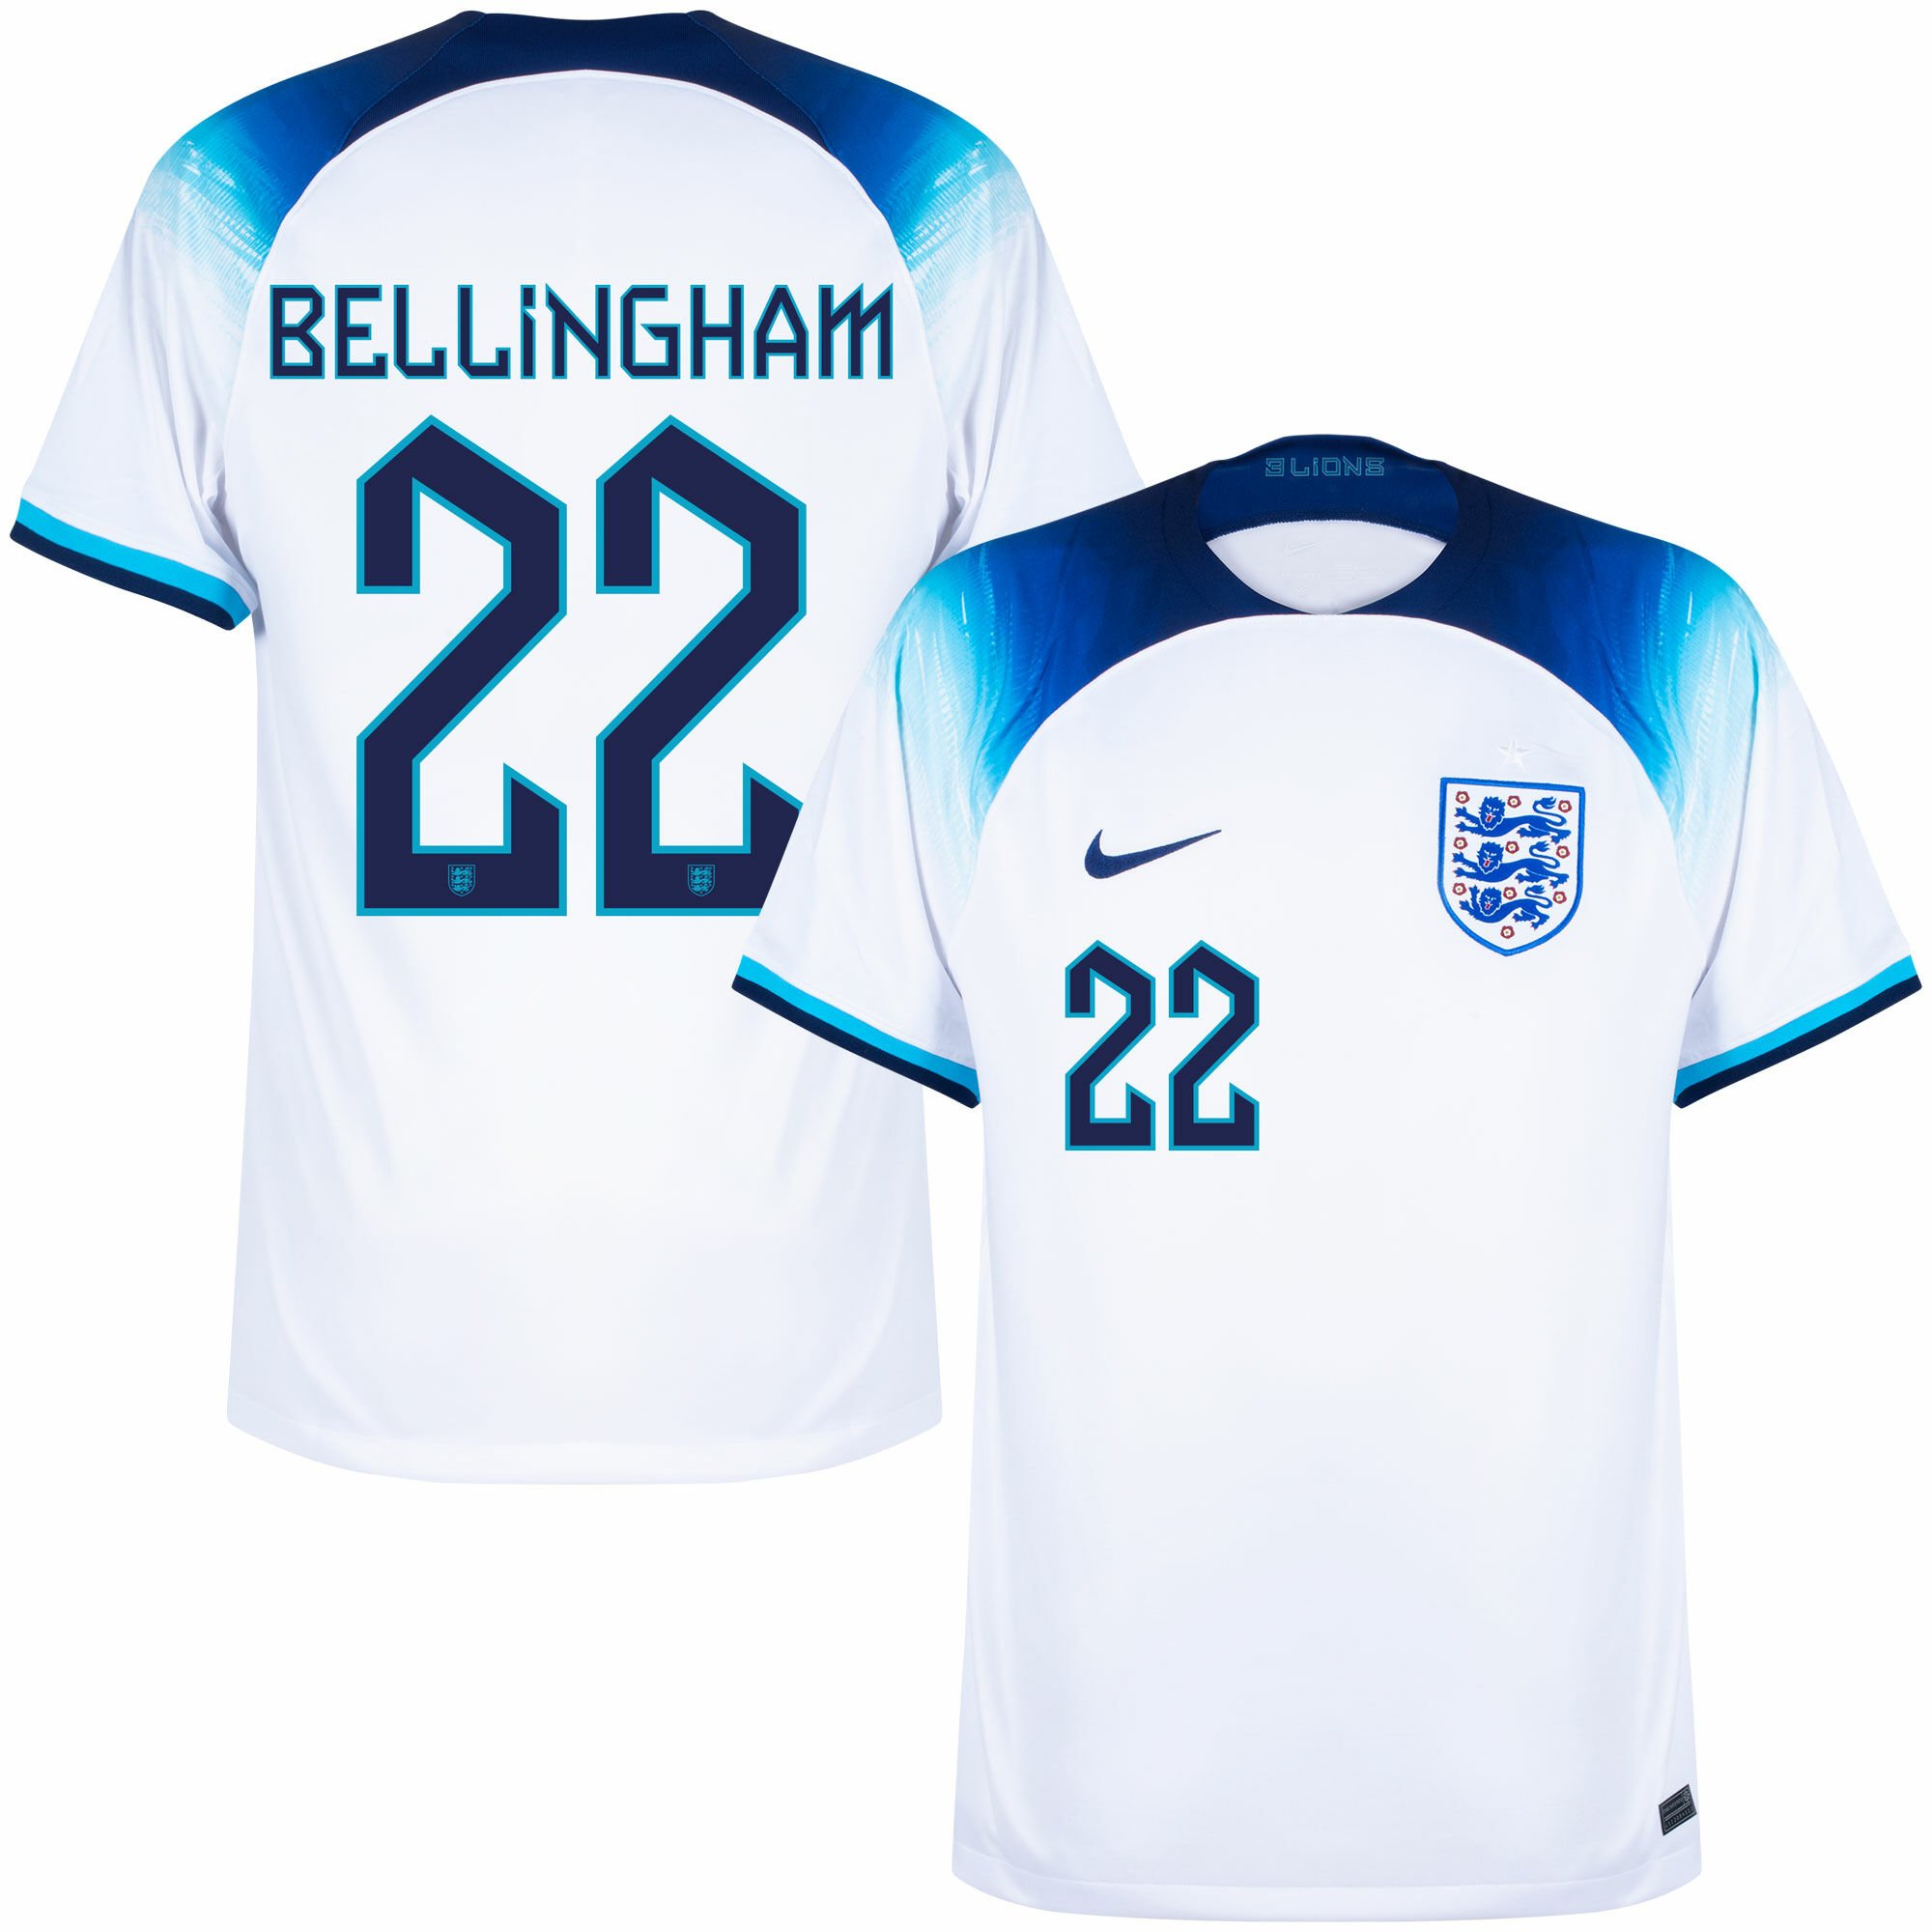 Anglie - Dres fotbalový - oficiální potisk, Jude Bellingham, číslo 22, domácí, bílý, sezóna 2022/23